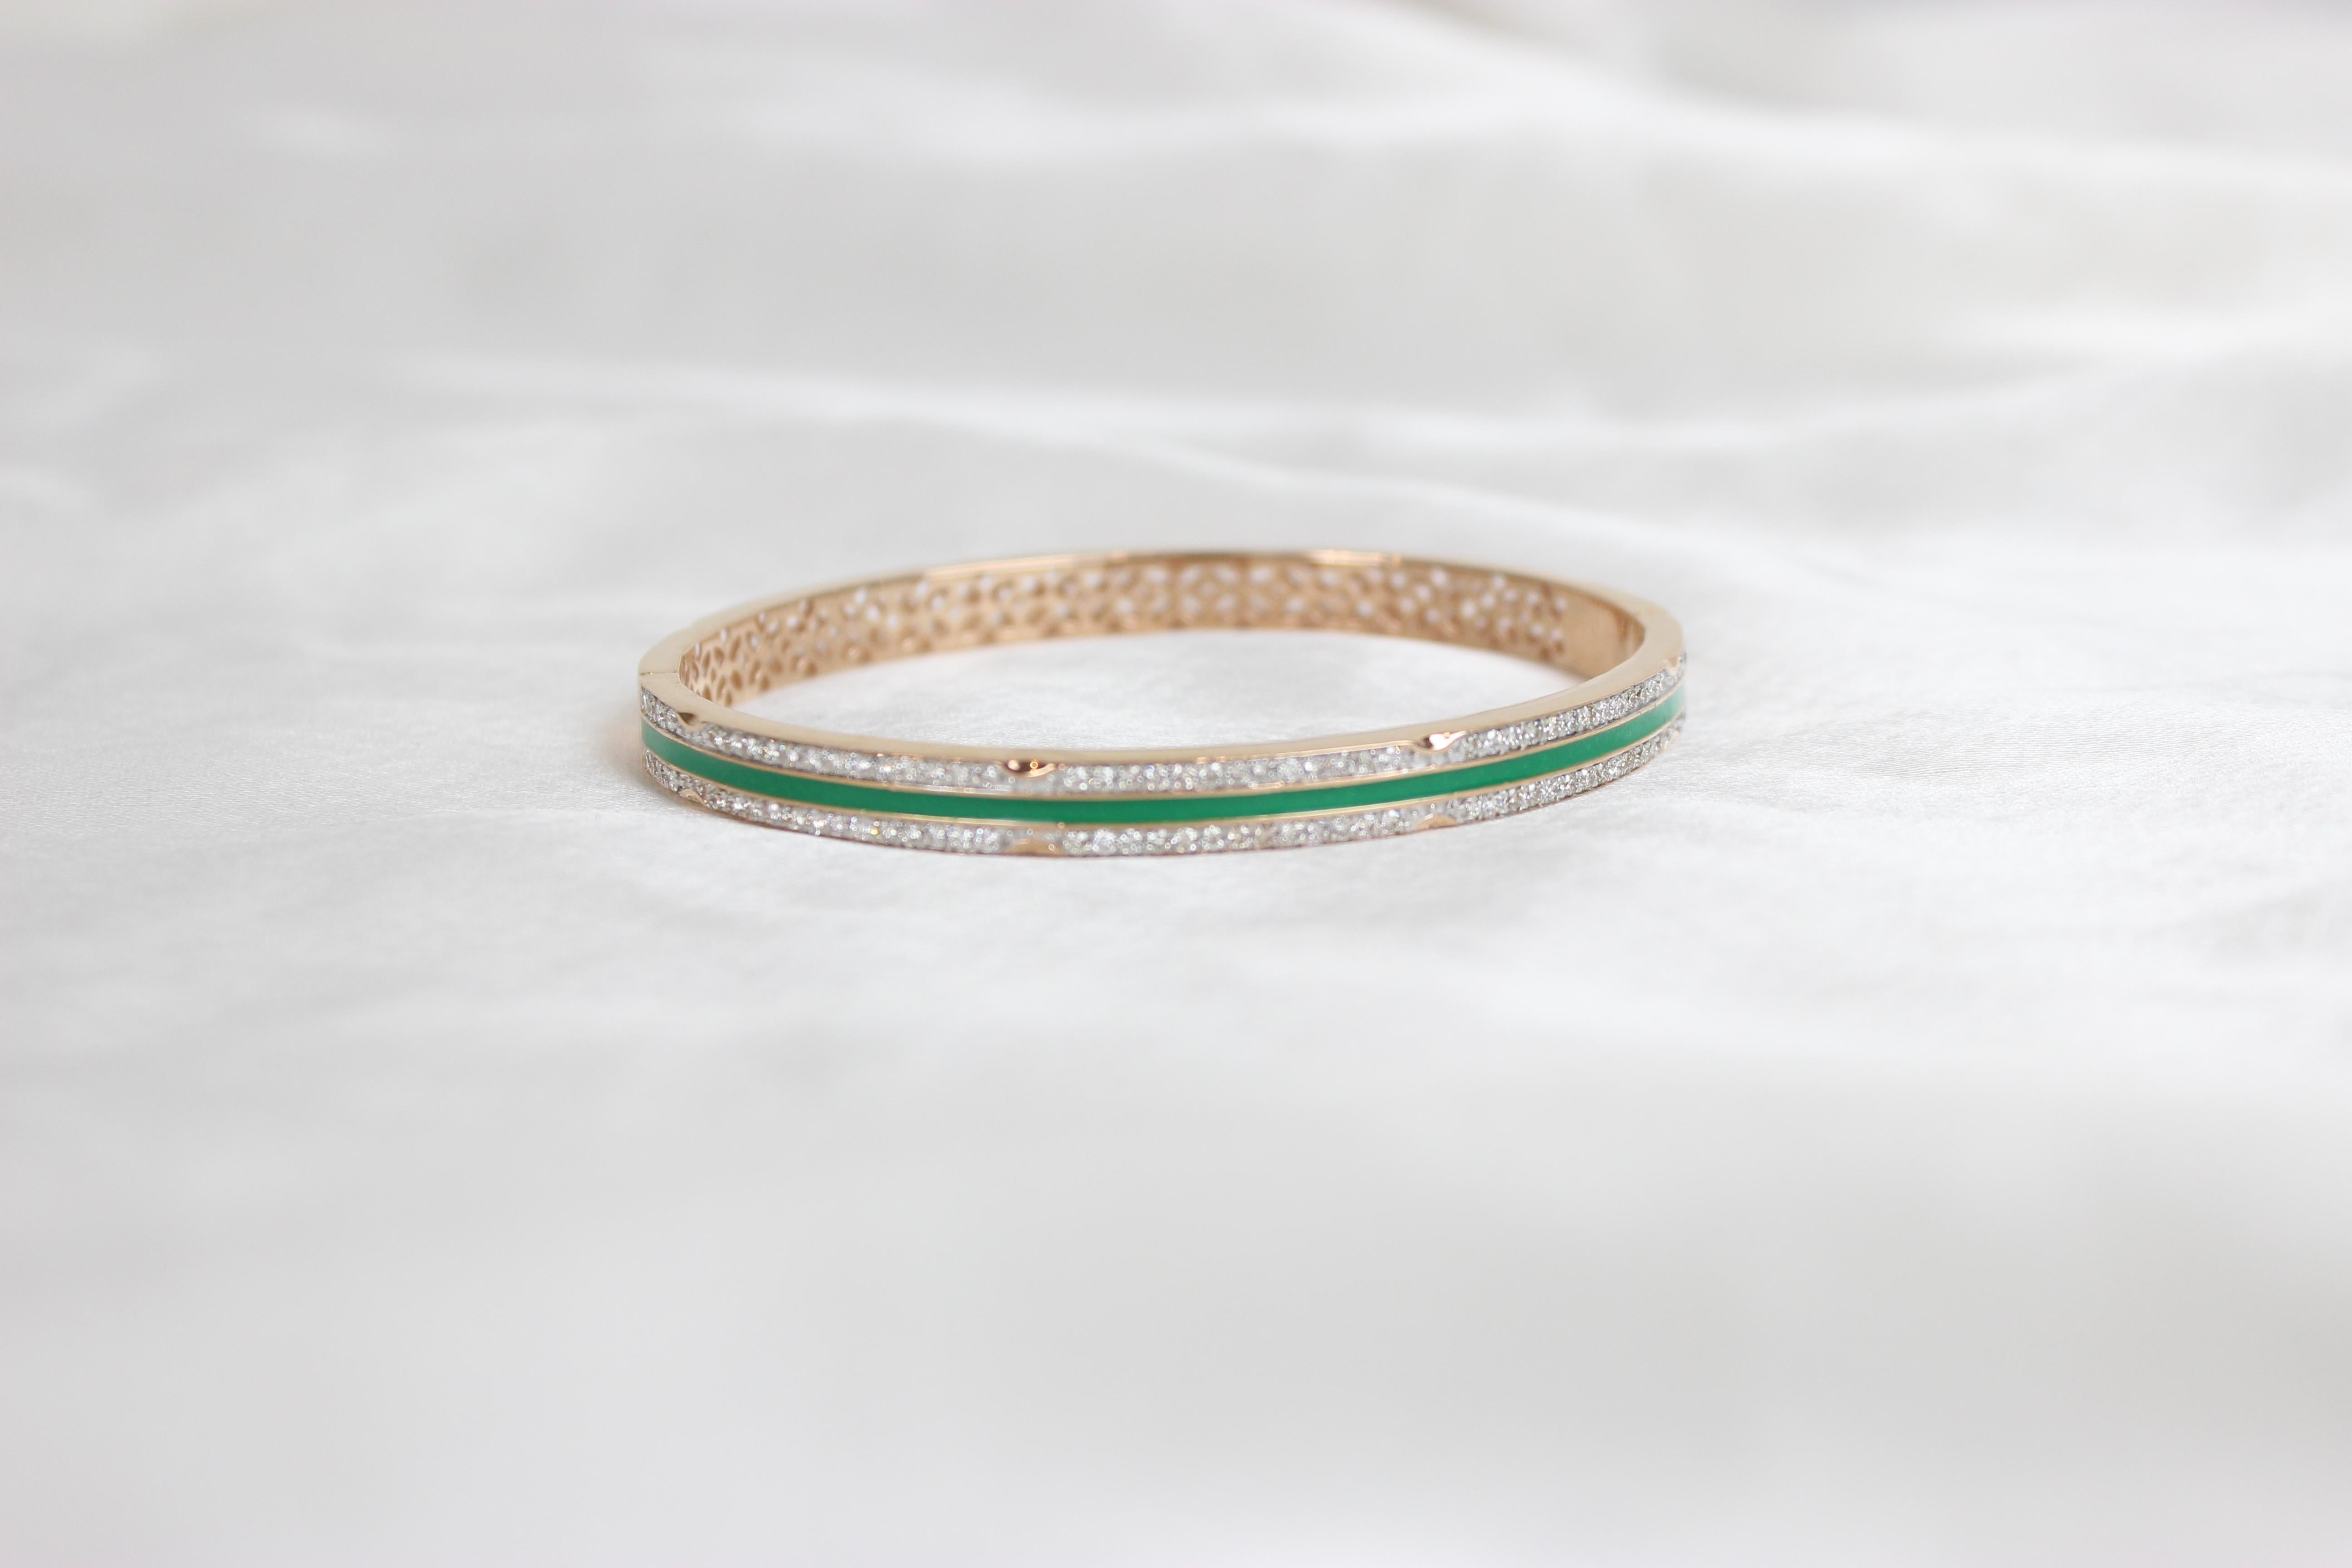 Das filigrane Diamantarmband mit grüner Emaillierung aus massivem 18-karätigem Gold ist ein atemberaubendes Schmuckstück, das die Komplexität von Filigranarbeit mit der Schönheit von Diamanten und grüner Emaillierung verbindet. Dieses Armband ist